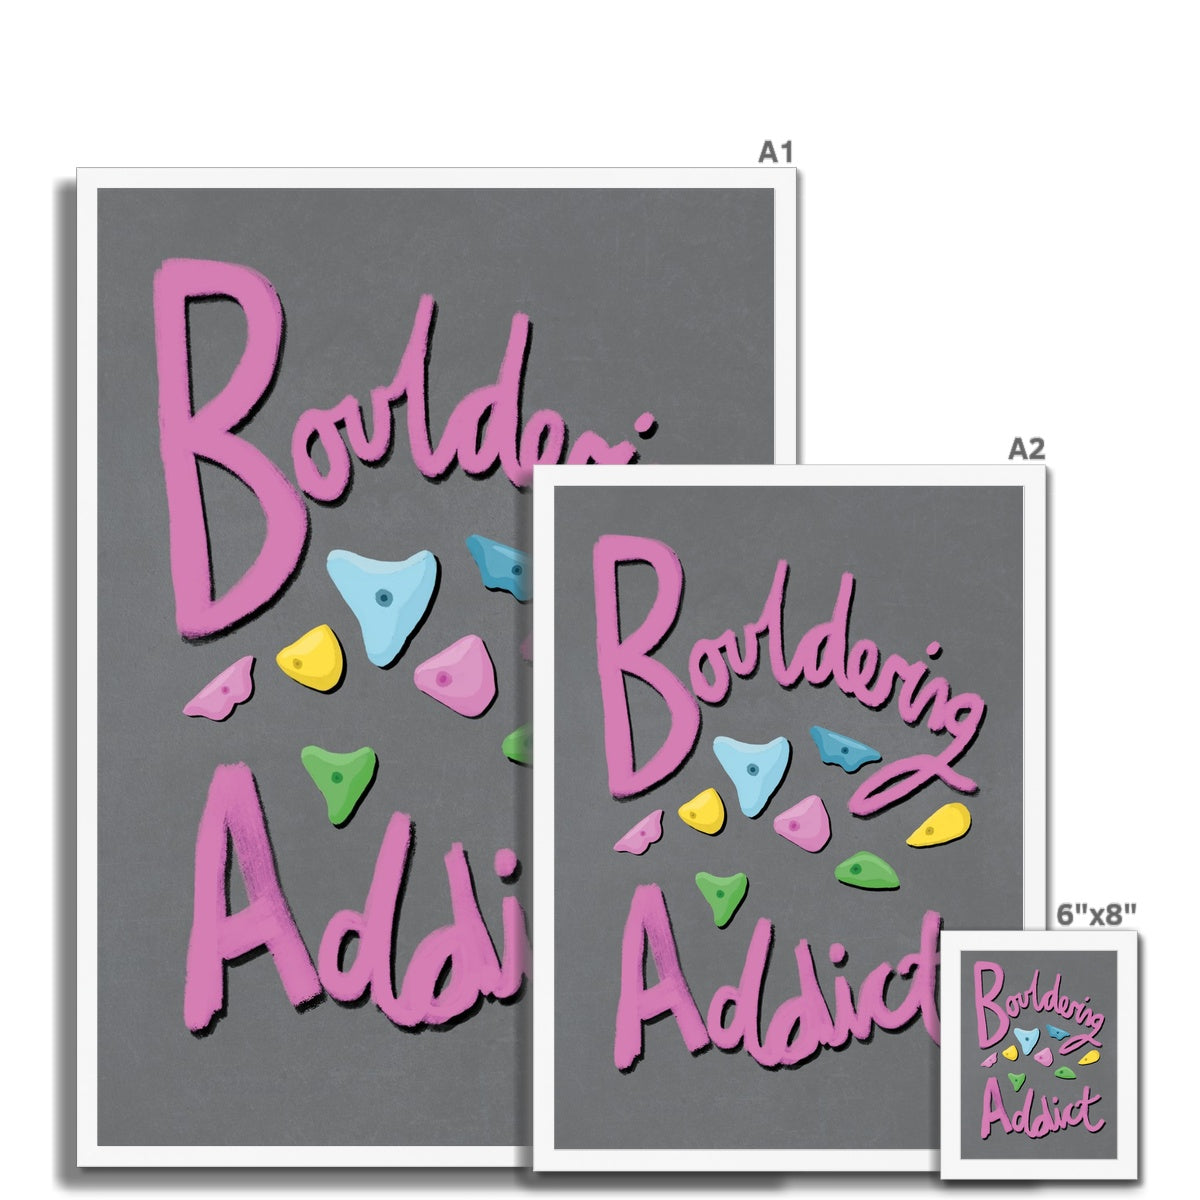 Bouldering Addict - Light Grey and Pink Framed Print